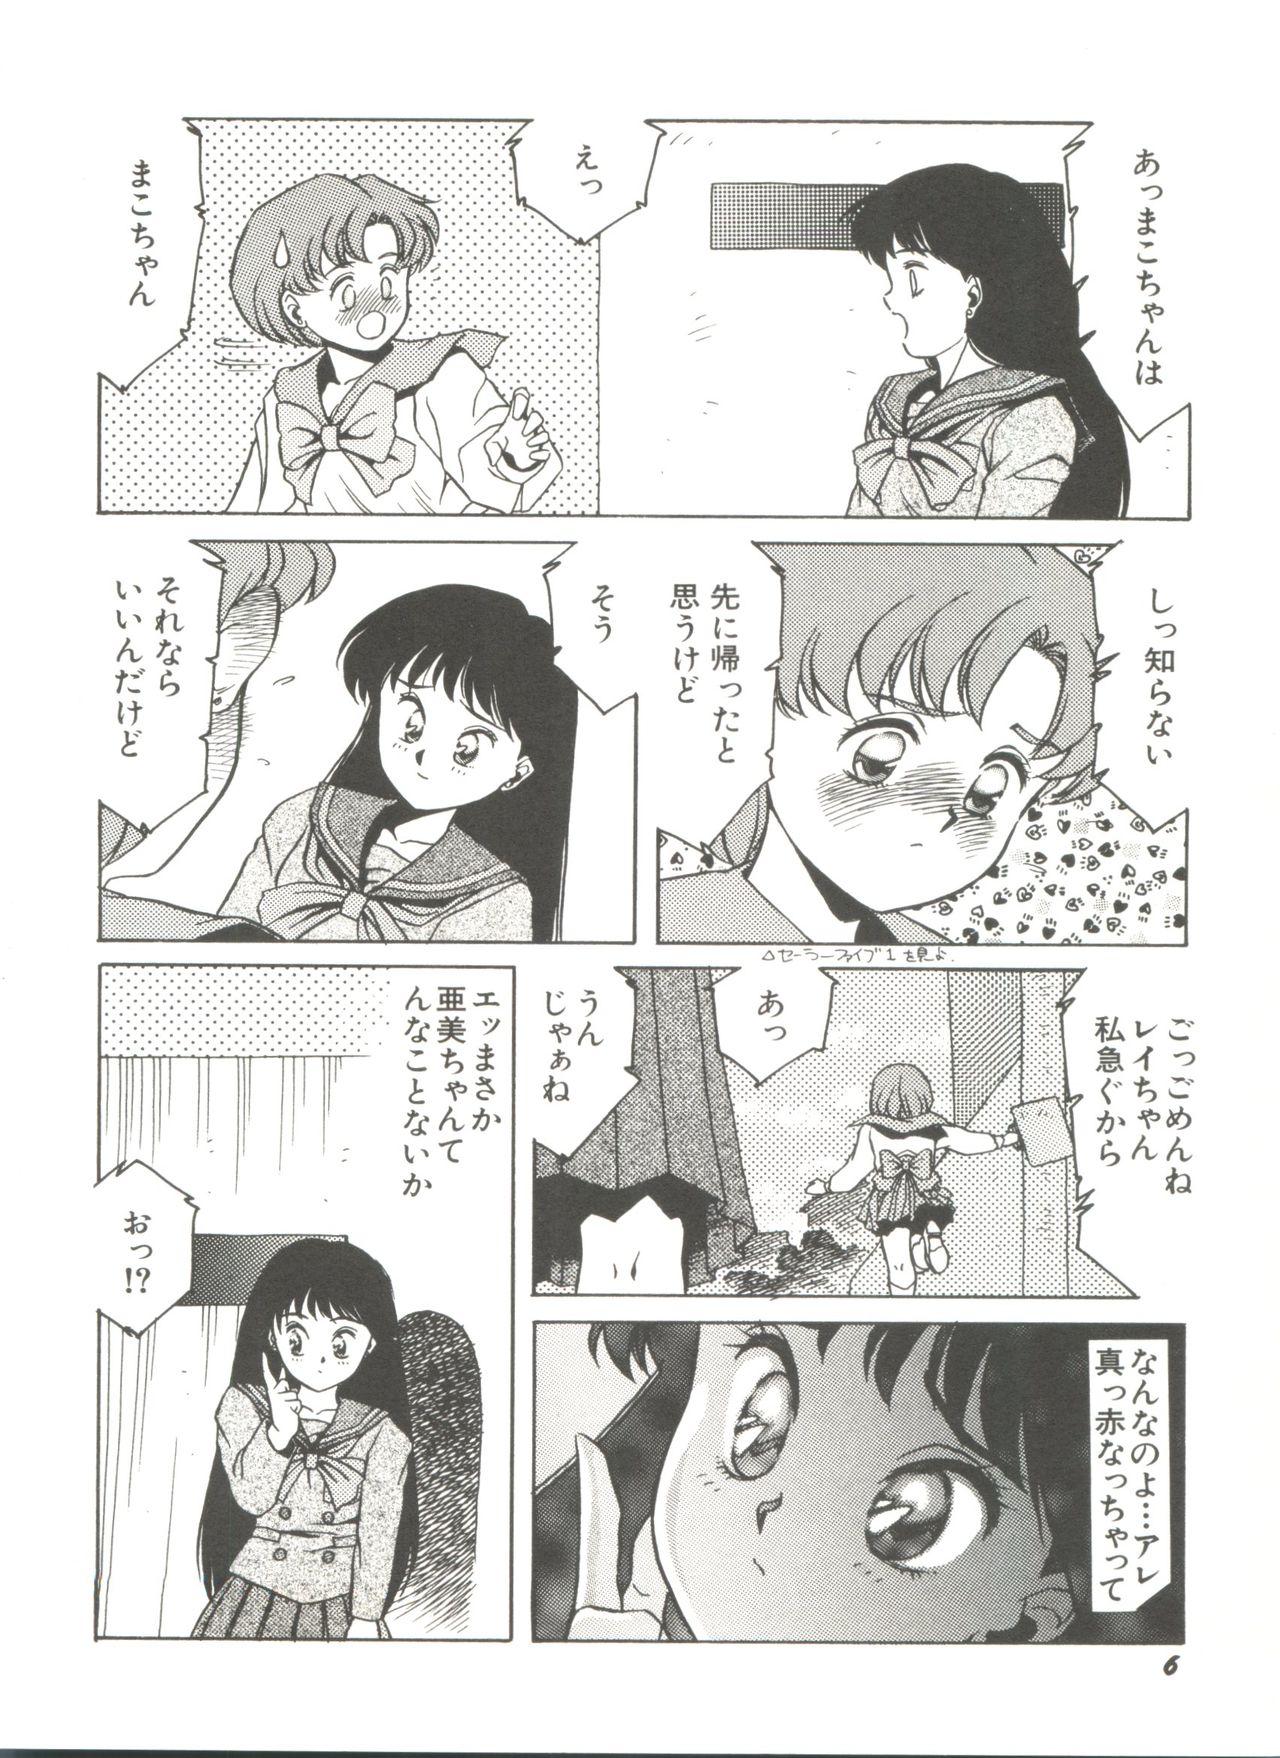 Casa Bishoujo Doujinshi Anthology 2 - Moon Paradise 1 Tsuki no Rakuen - Sailor moon Bigtits - Page 9